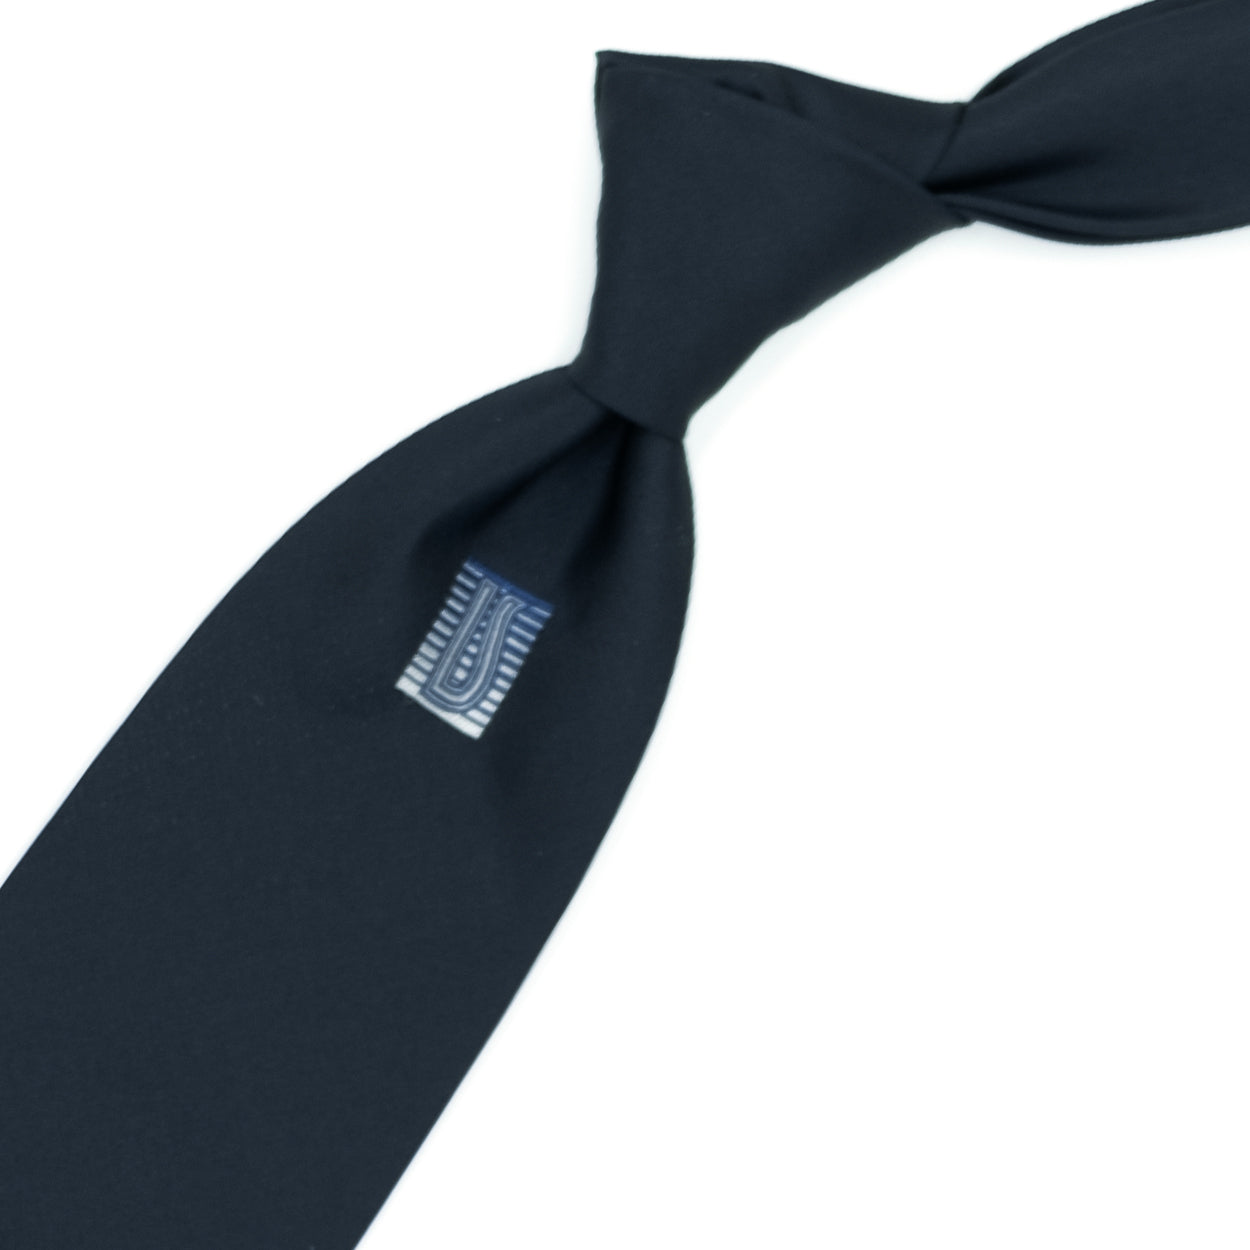 Cravatta blu con logo Ulturale blu al sottonodo